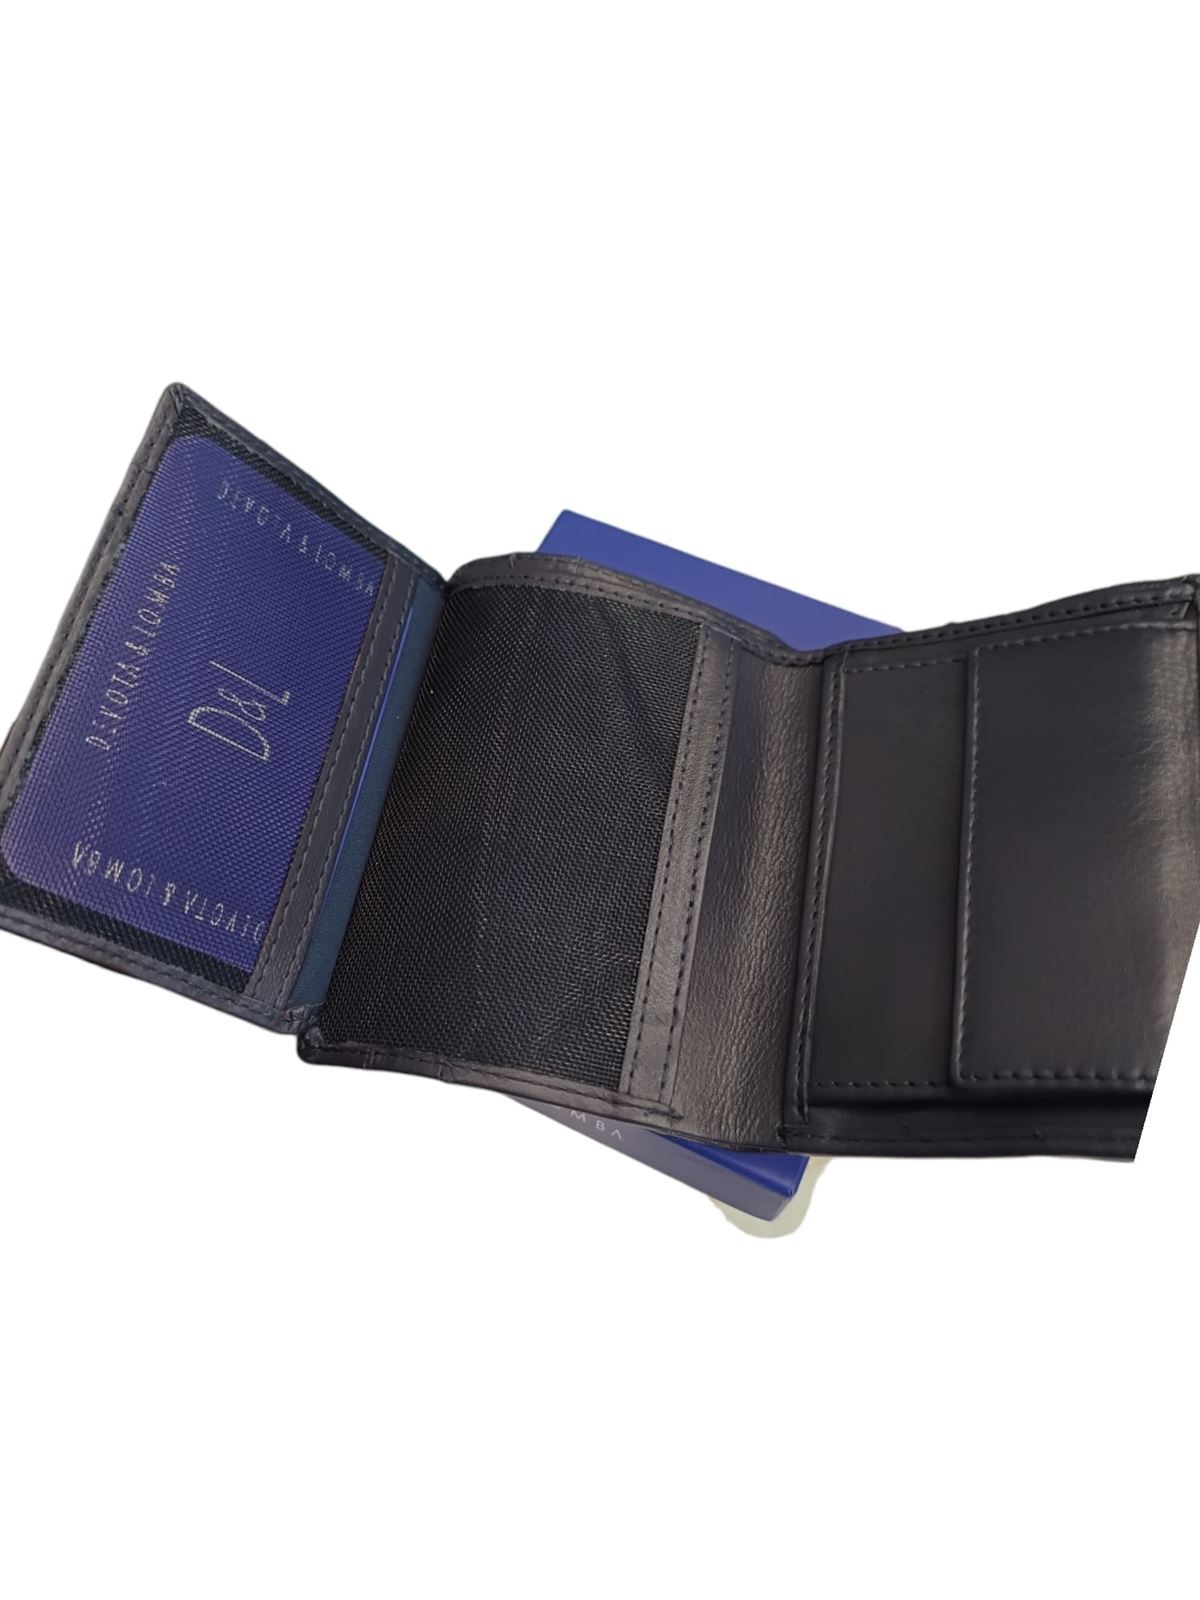 Billetera de hombre azul en piel con cierre de goma y monedero - Imagen 3